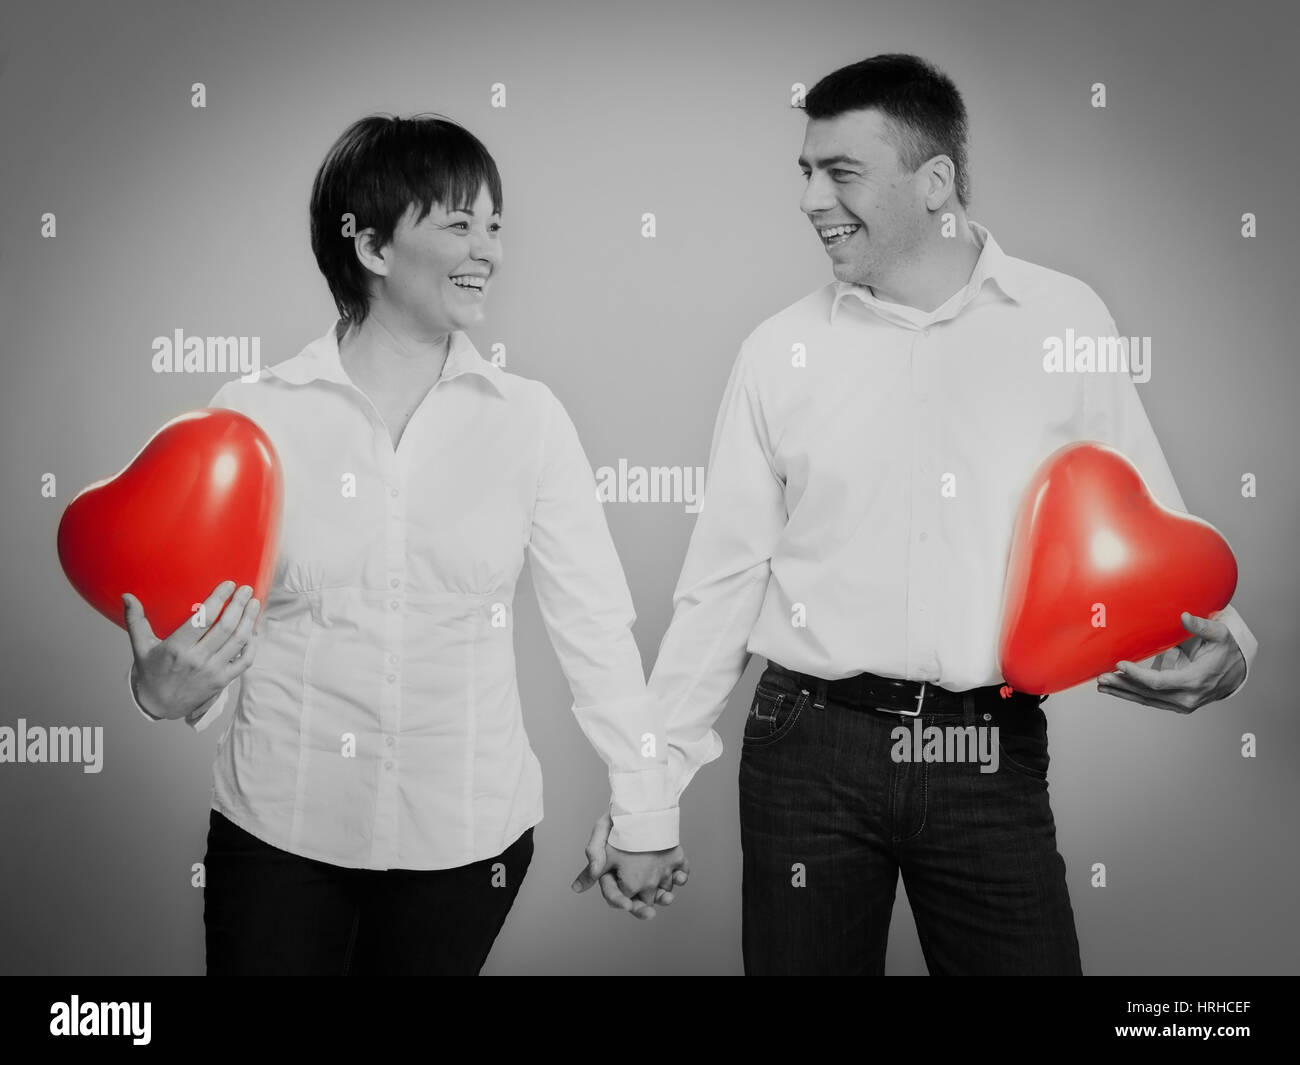 Paar mit Herzluftballonen - couple with heart balloons Stock Photo